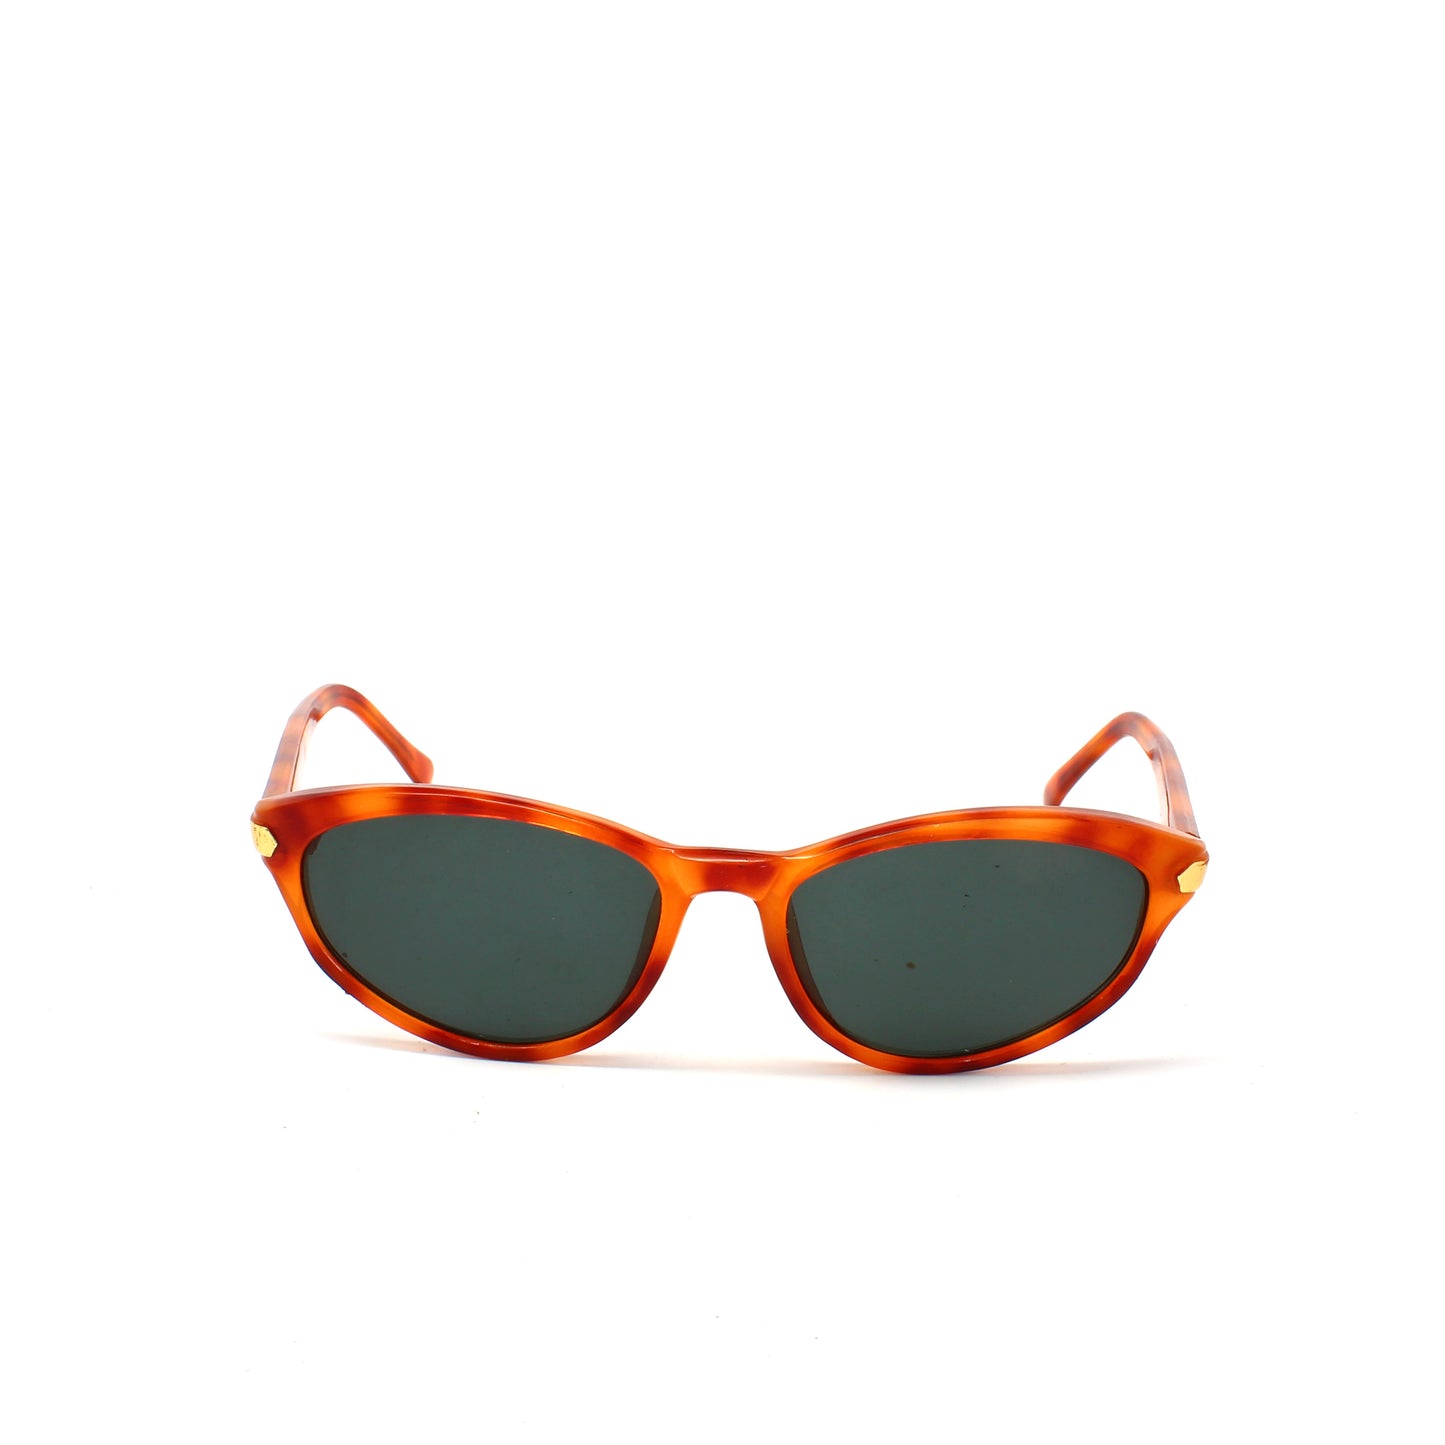 Vintage Standard Size Original Melrose Oval Sunglasses - Brown